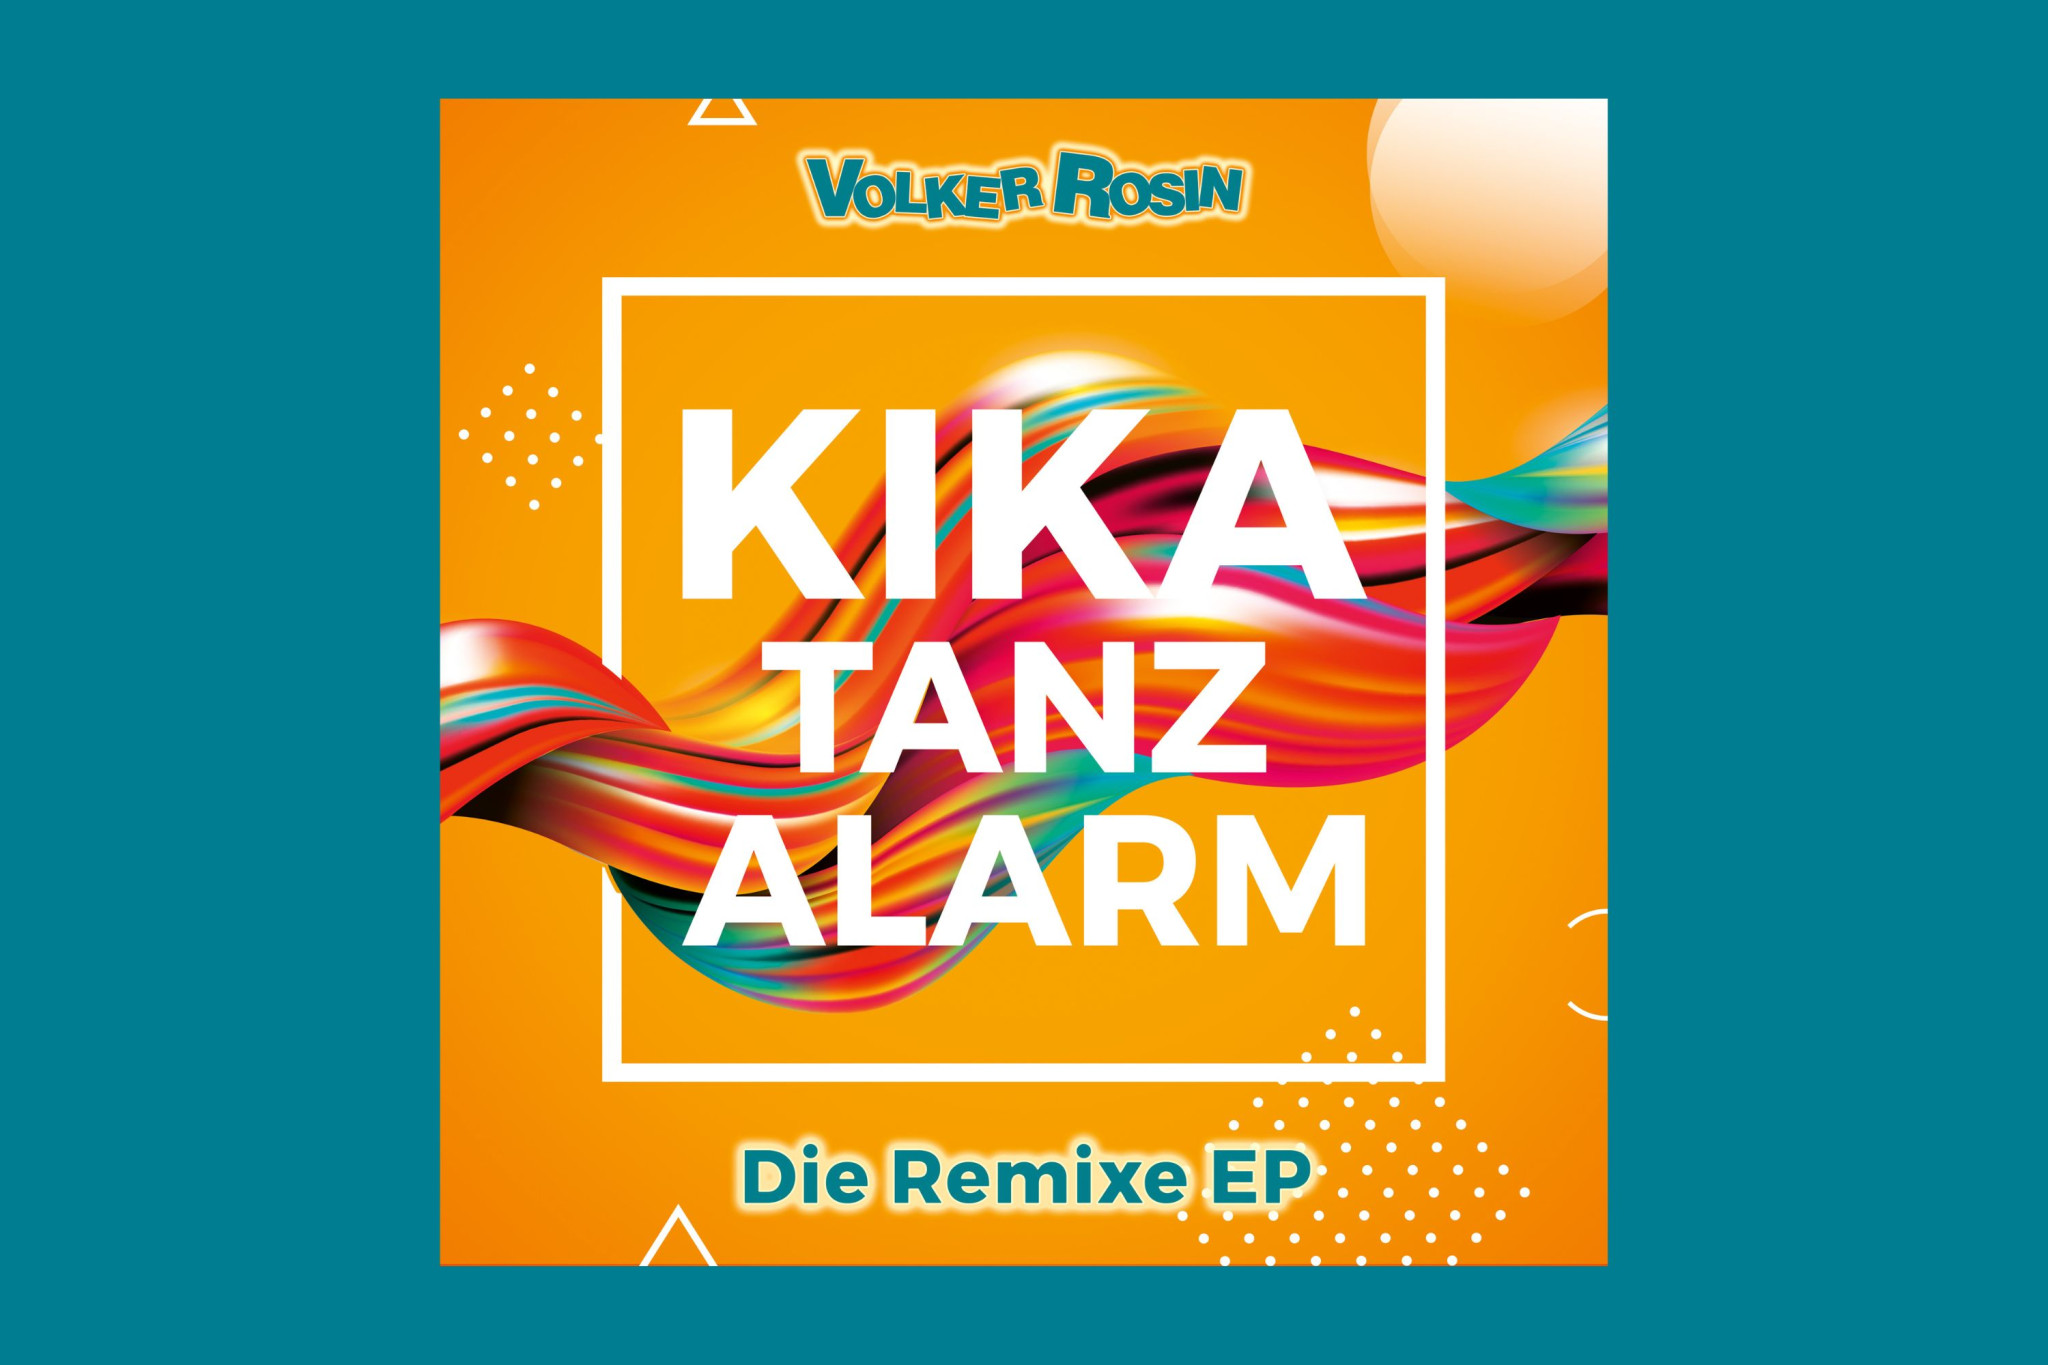 Volker Rosins neue EP mit 6 krassen Remixen seines Hits "Kika Tanzalarm"